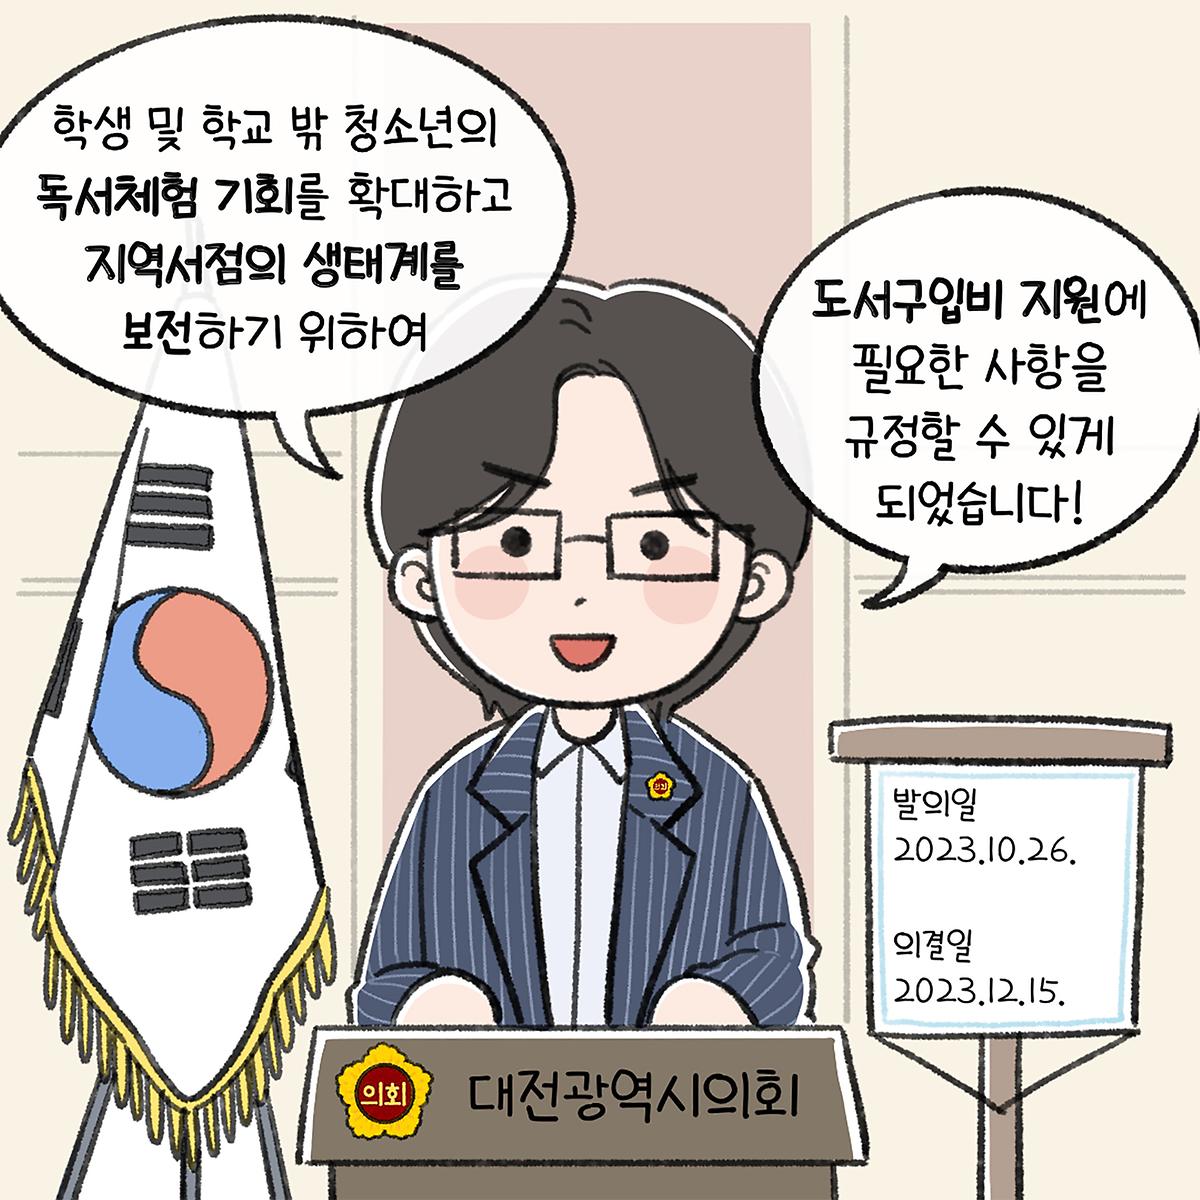 대전광역시 도서구입비 지원조례(박주화 의원 대표발의)